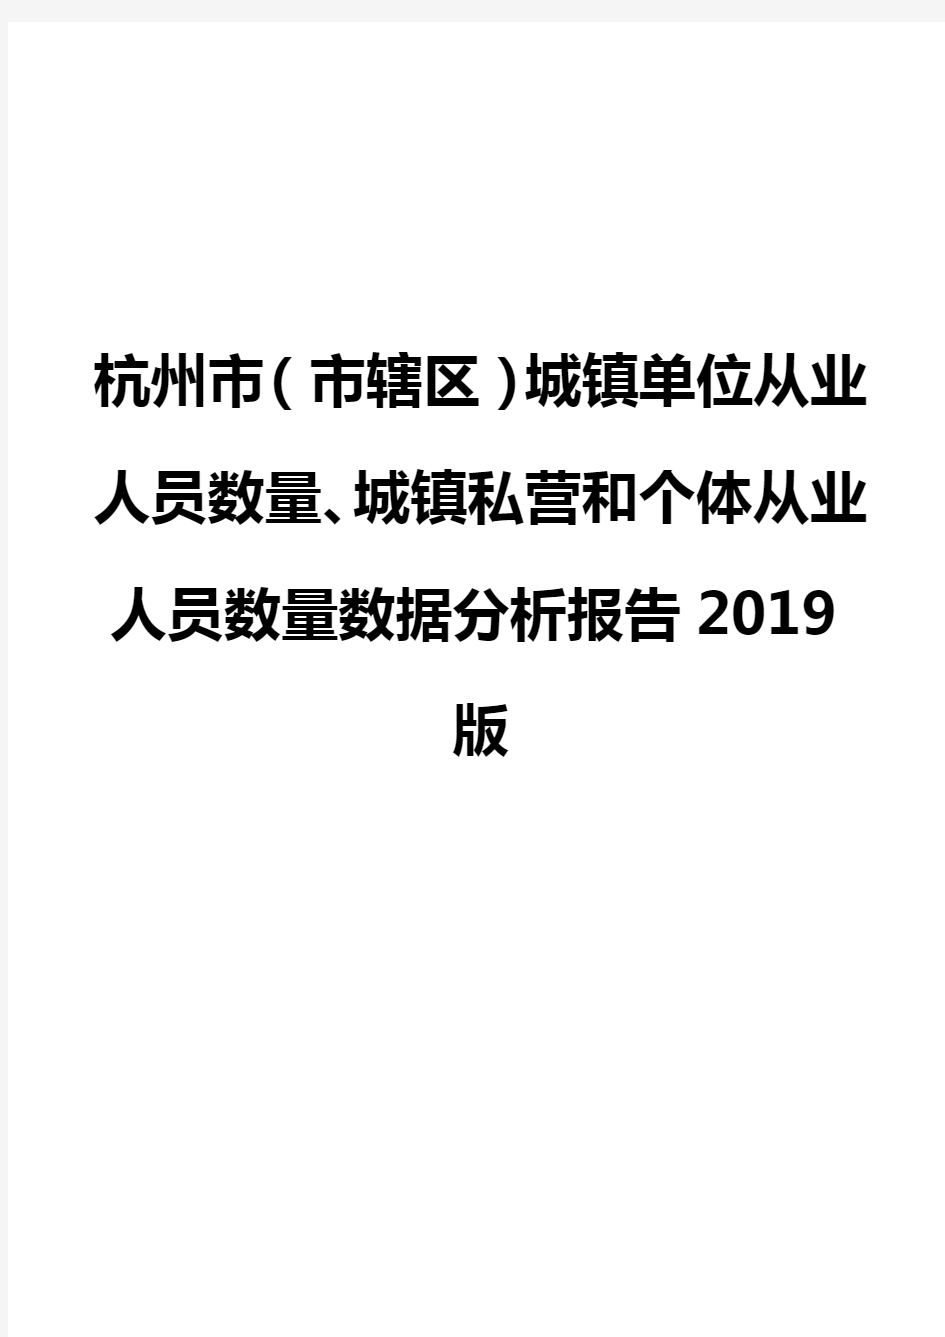 杭州市(市辖区)城镇单位从业人员数量、城镇私营和个体从业人员数量数据分析报告2019版